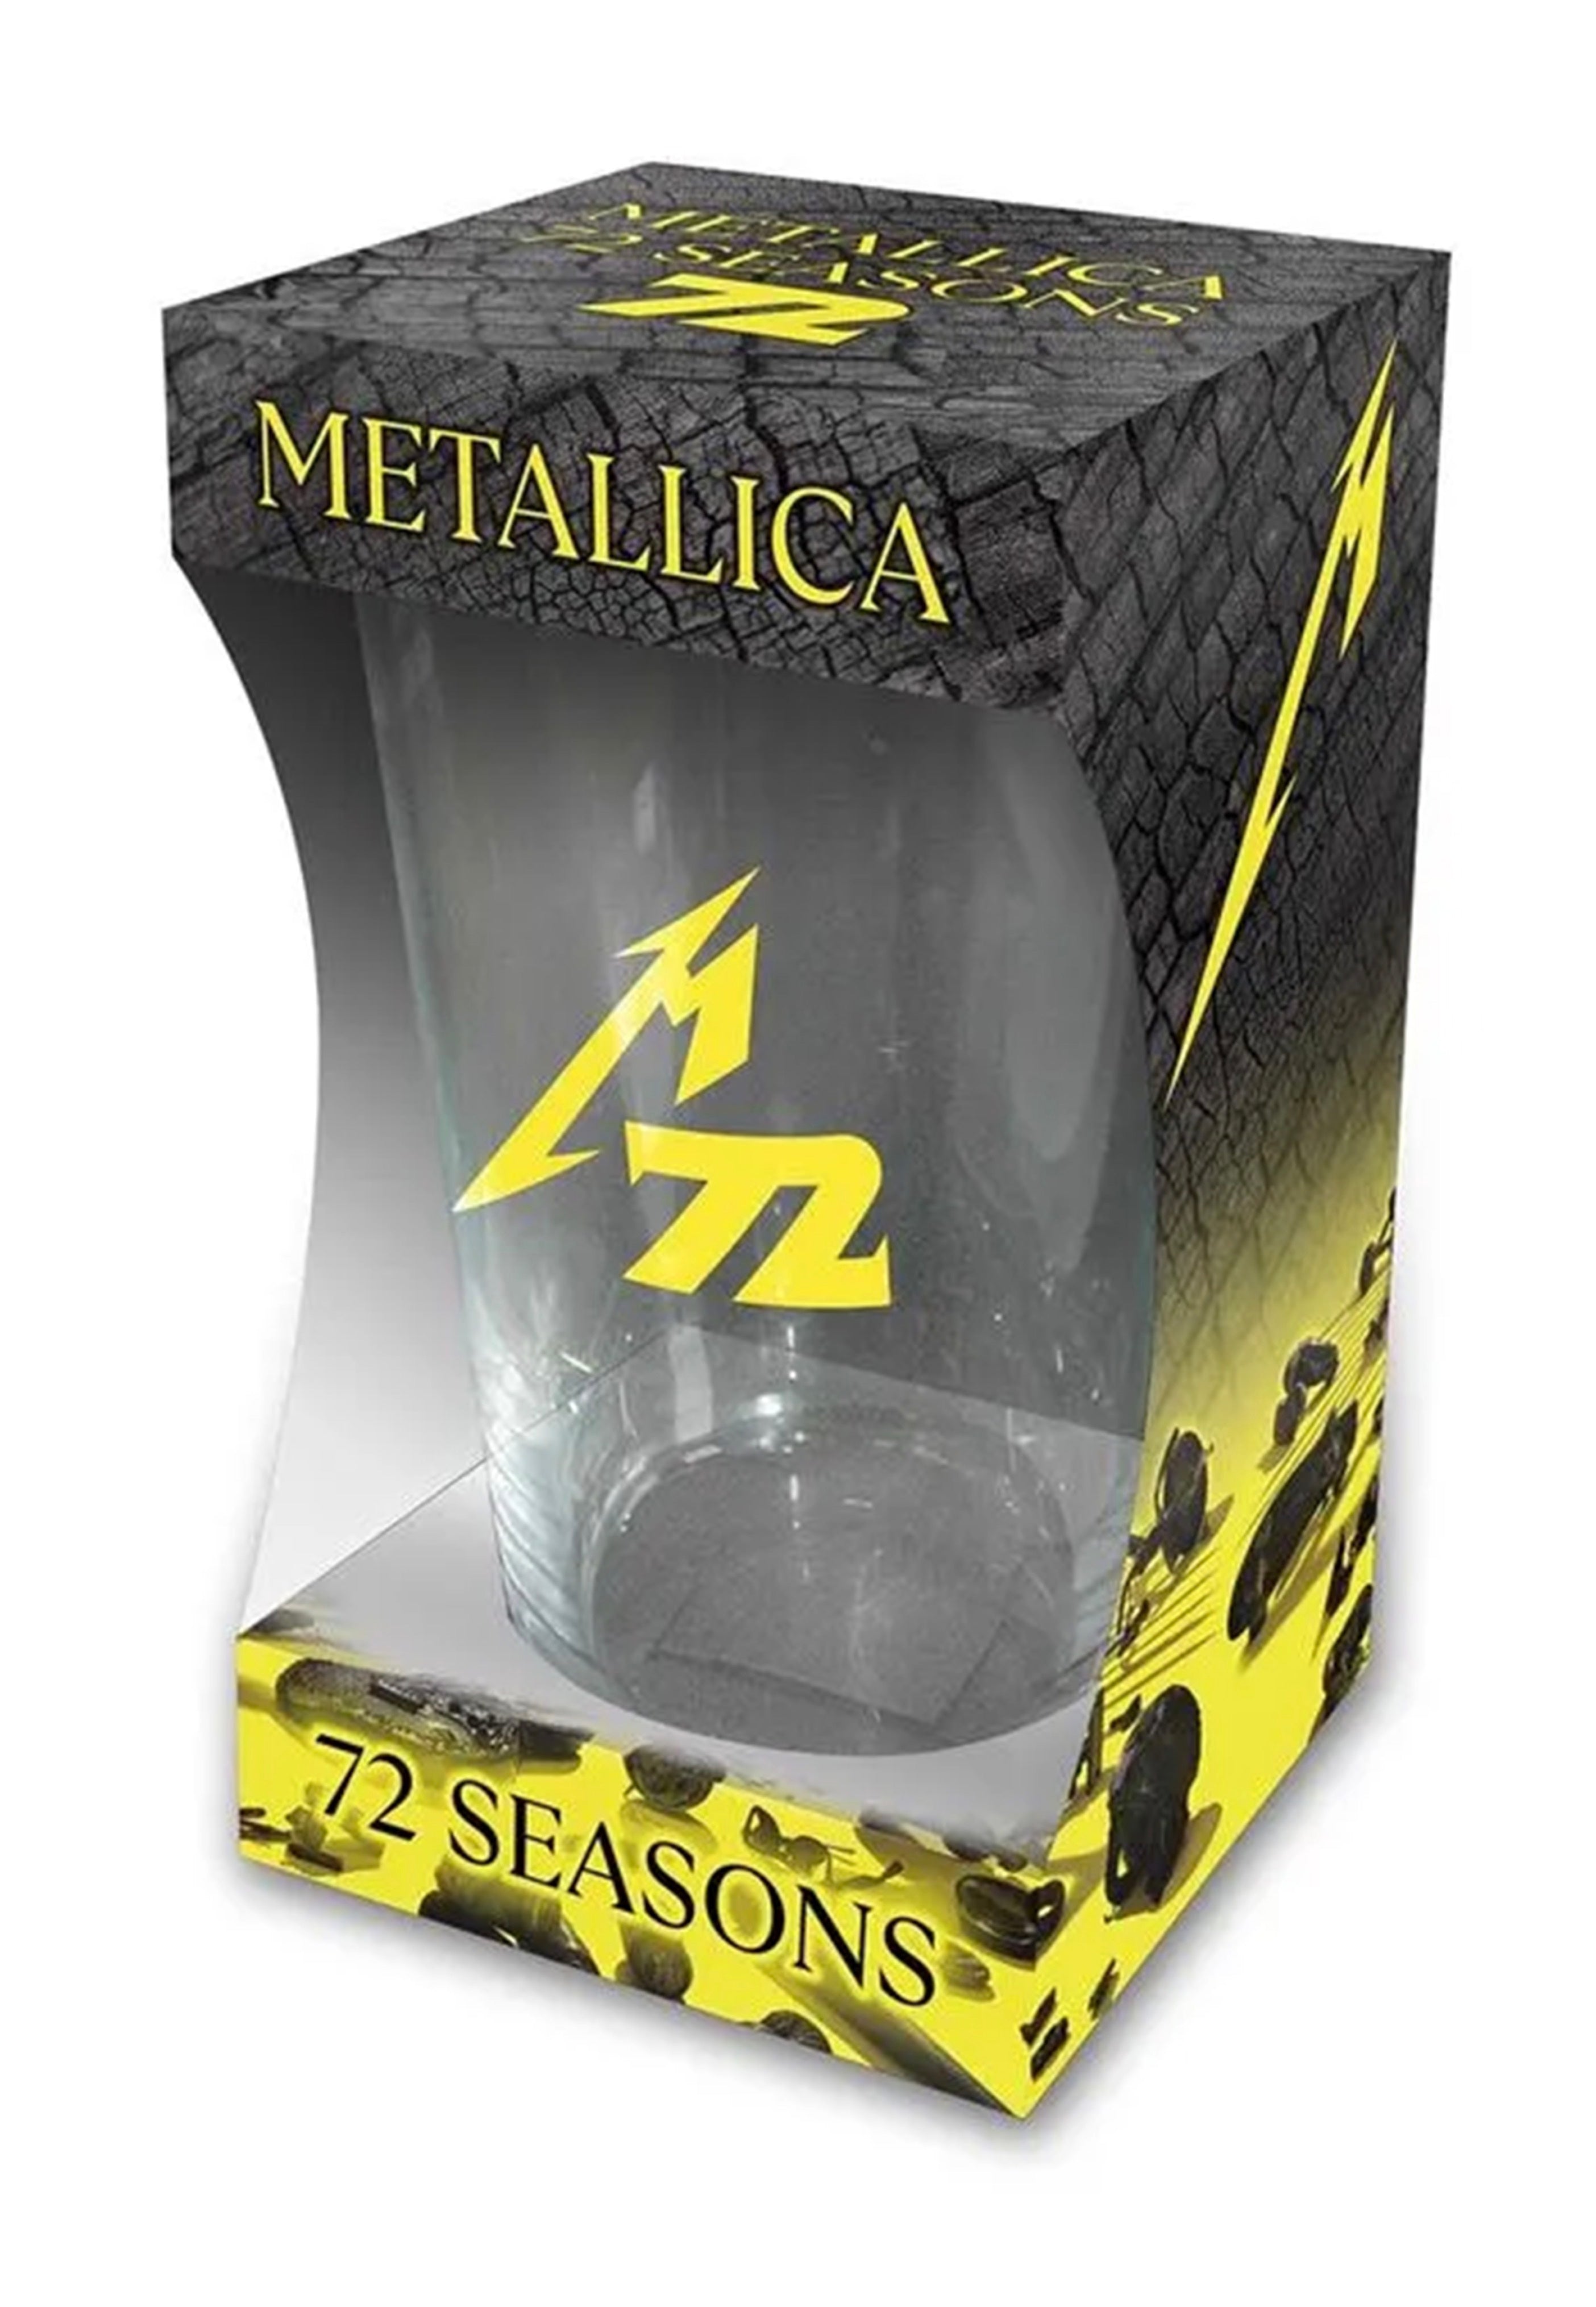 Metallica - 72 Seasons - Glass